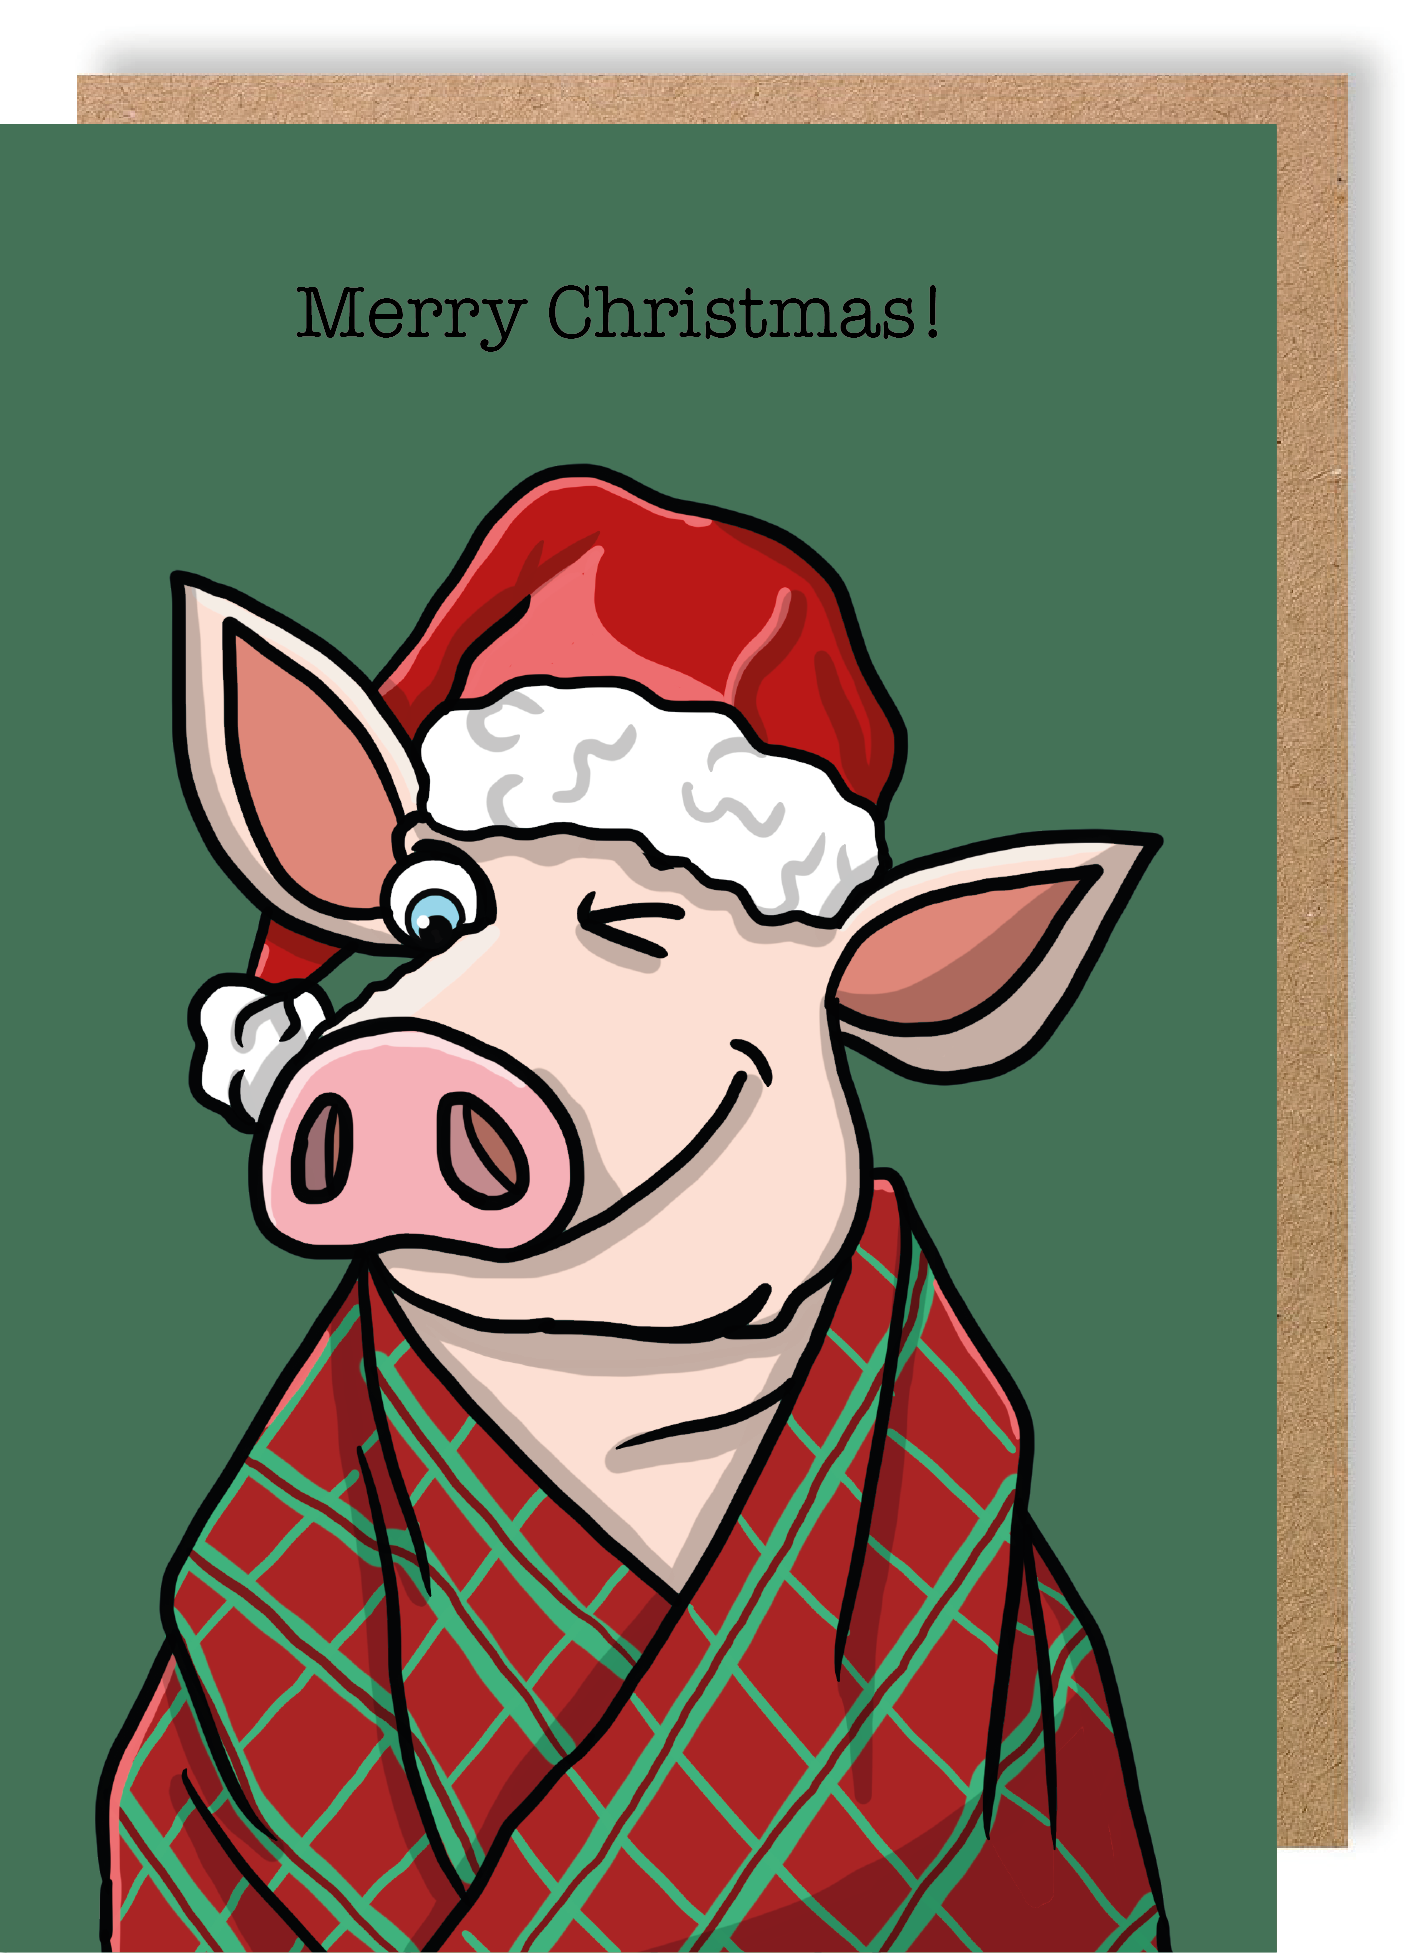 Christmas Pig in Blanket - Greetings Card - LukeHorton Art